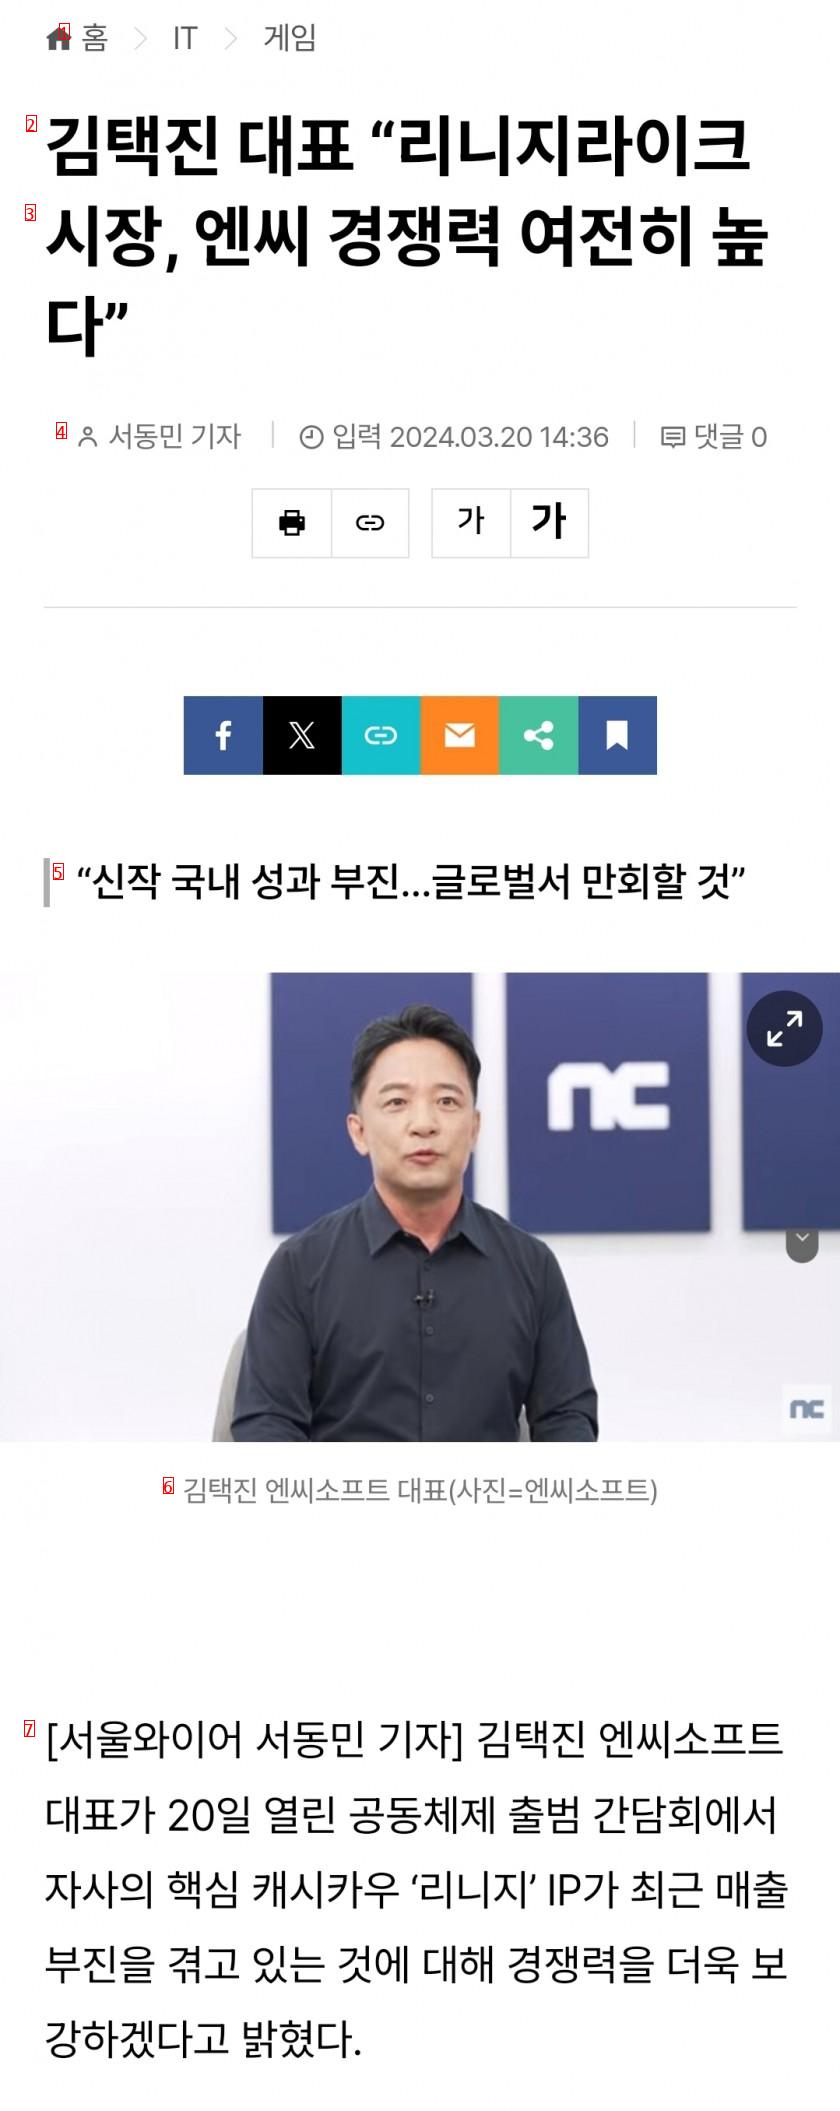 김택진 대표 “리니지라이크 시장, 엔씨 경쟁력 여전히 높다”